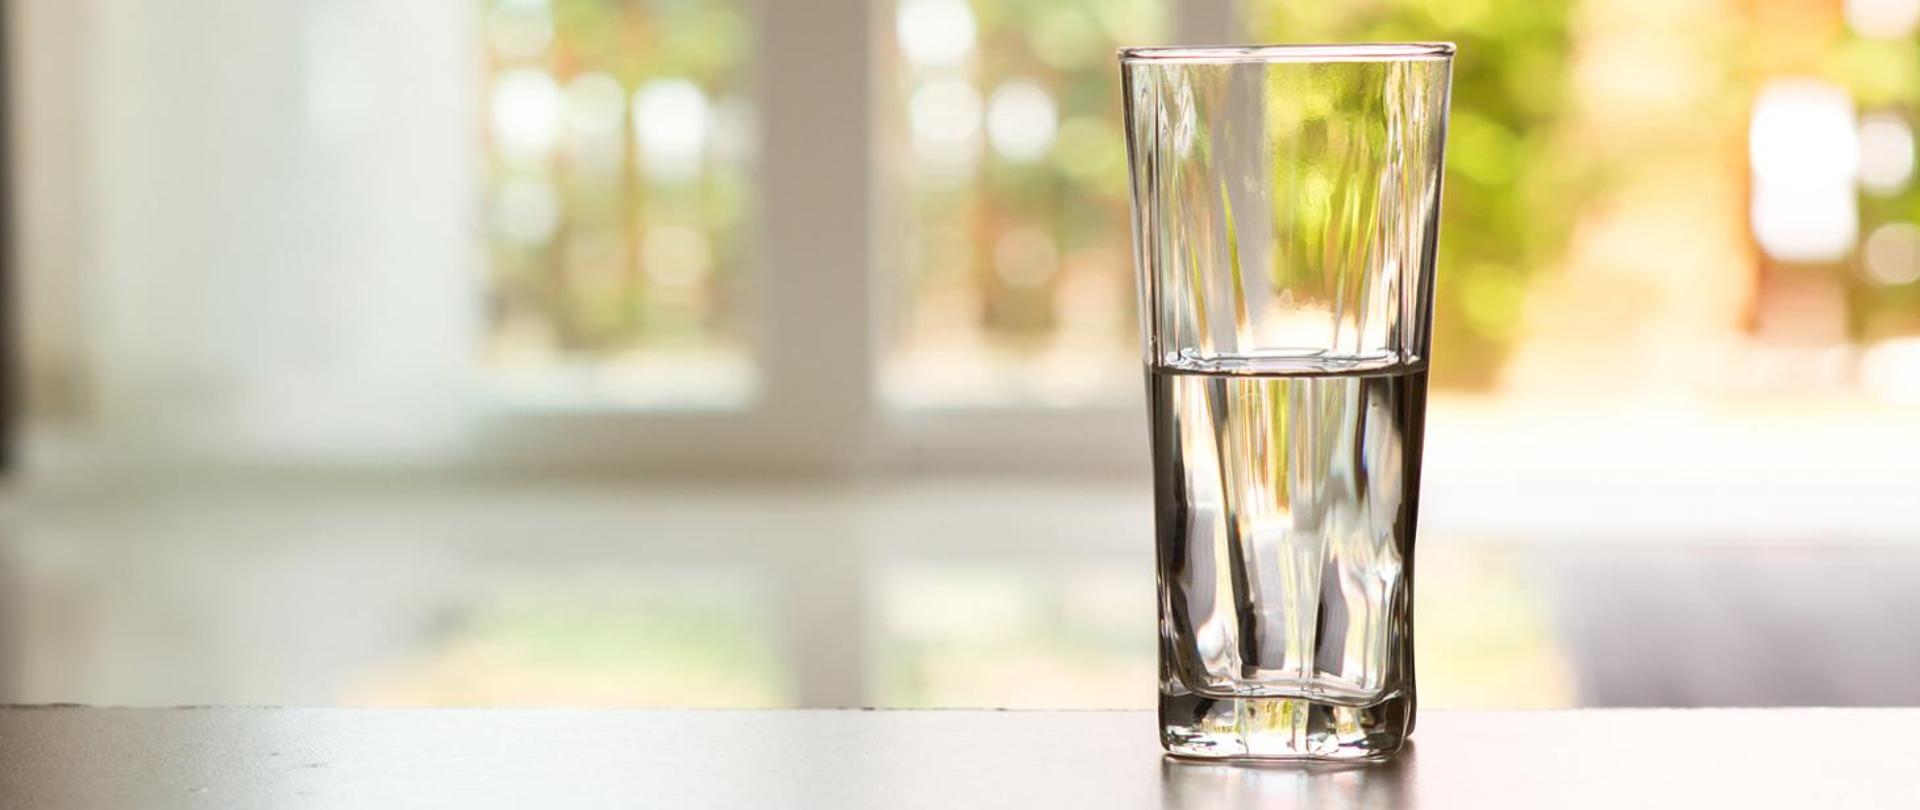 na blacie stołu stoi szklanka napełniona do połowy wodą